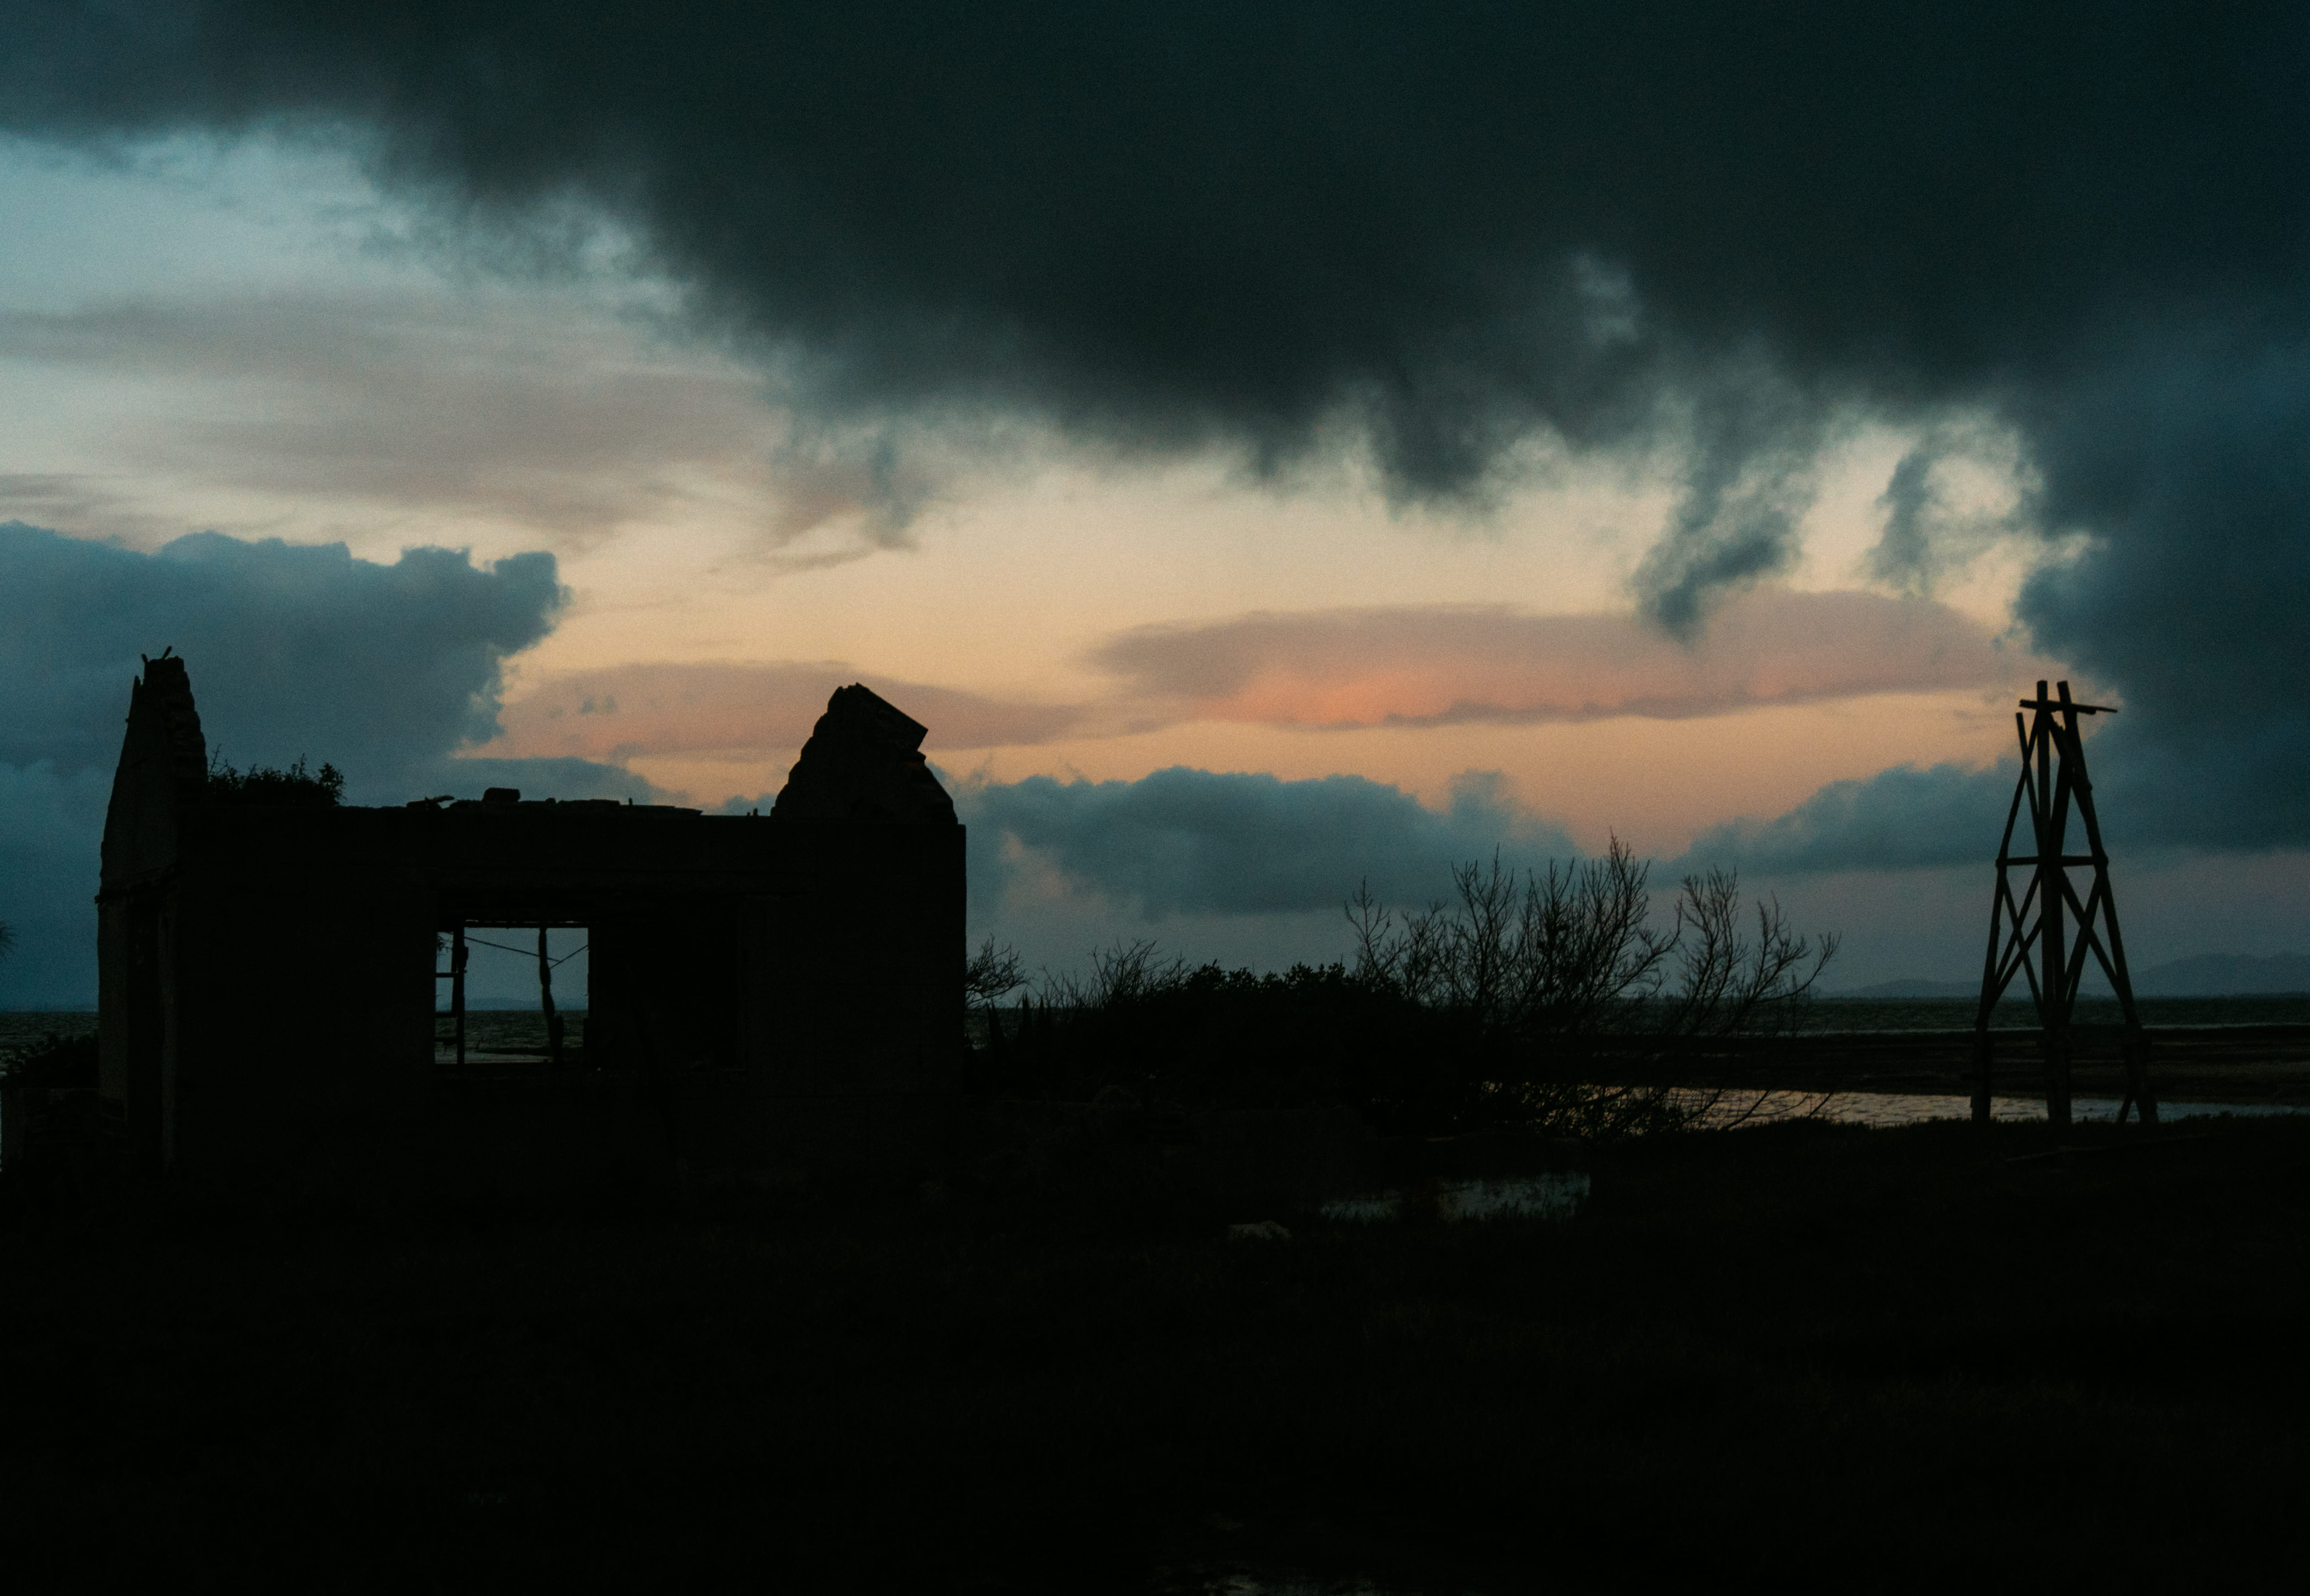 brazil, araruama, abandon house, demoliton, wind, sunset, lake